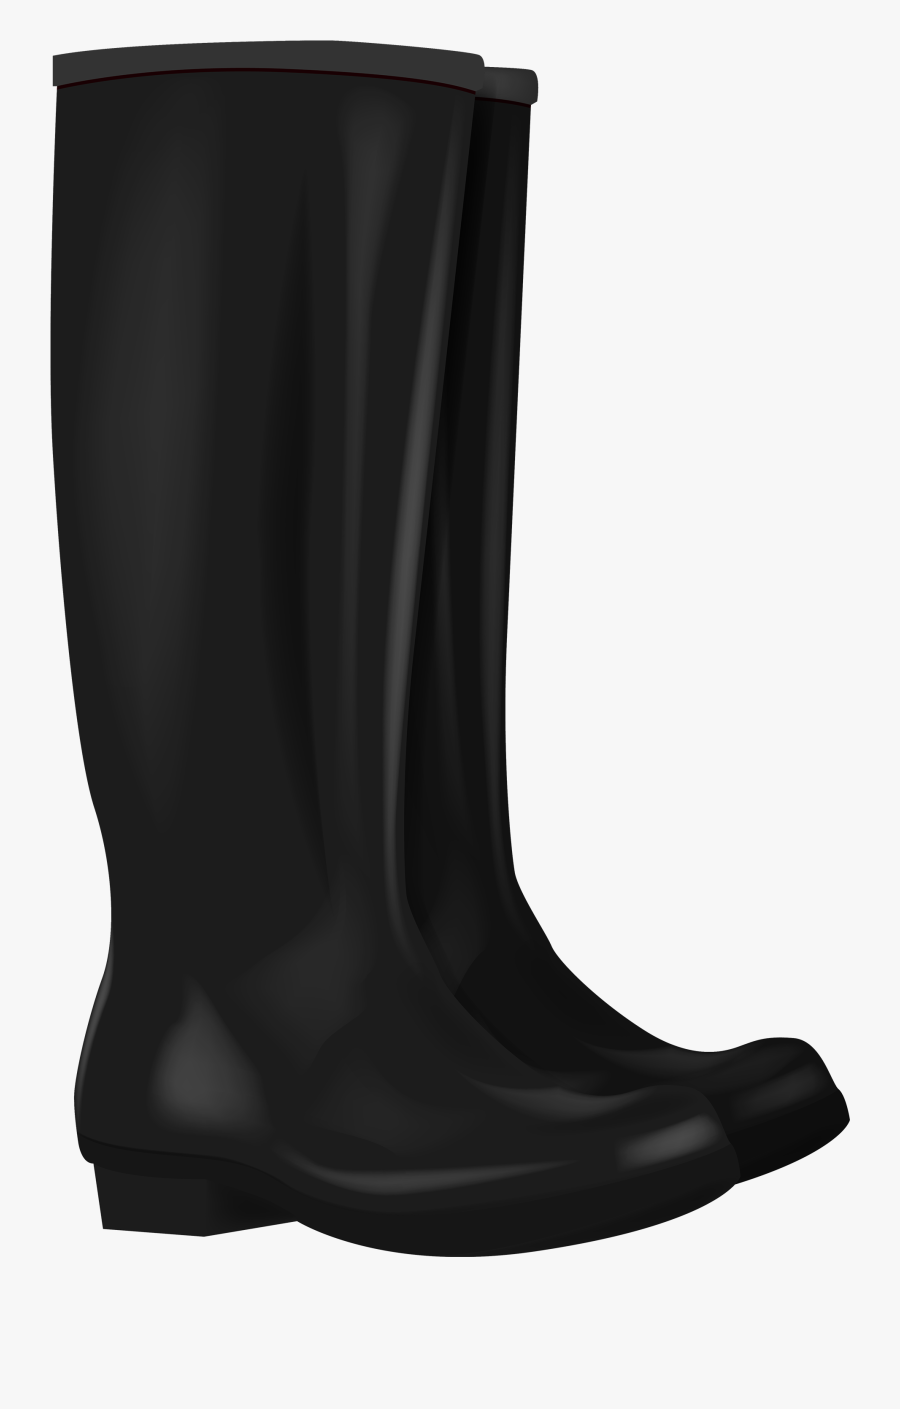 Black Rubber Boots Png Clipart - Rain 